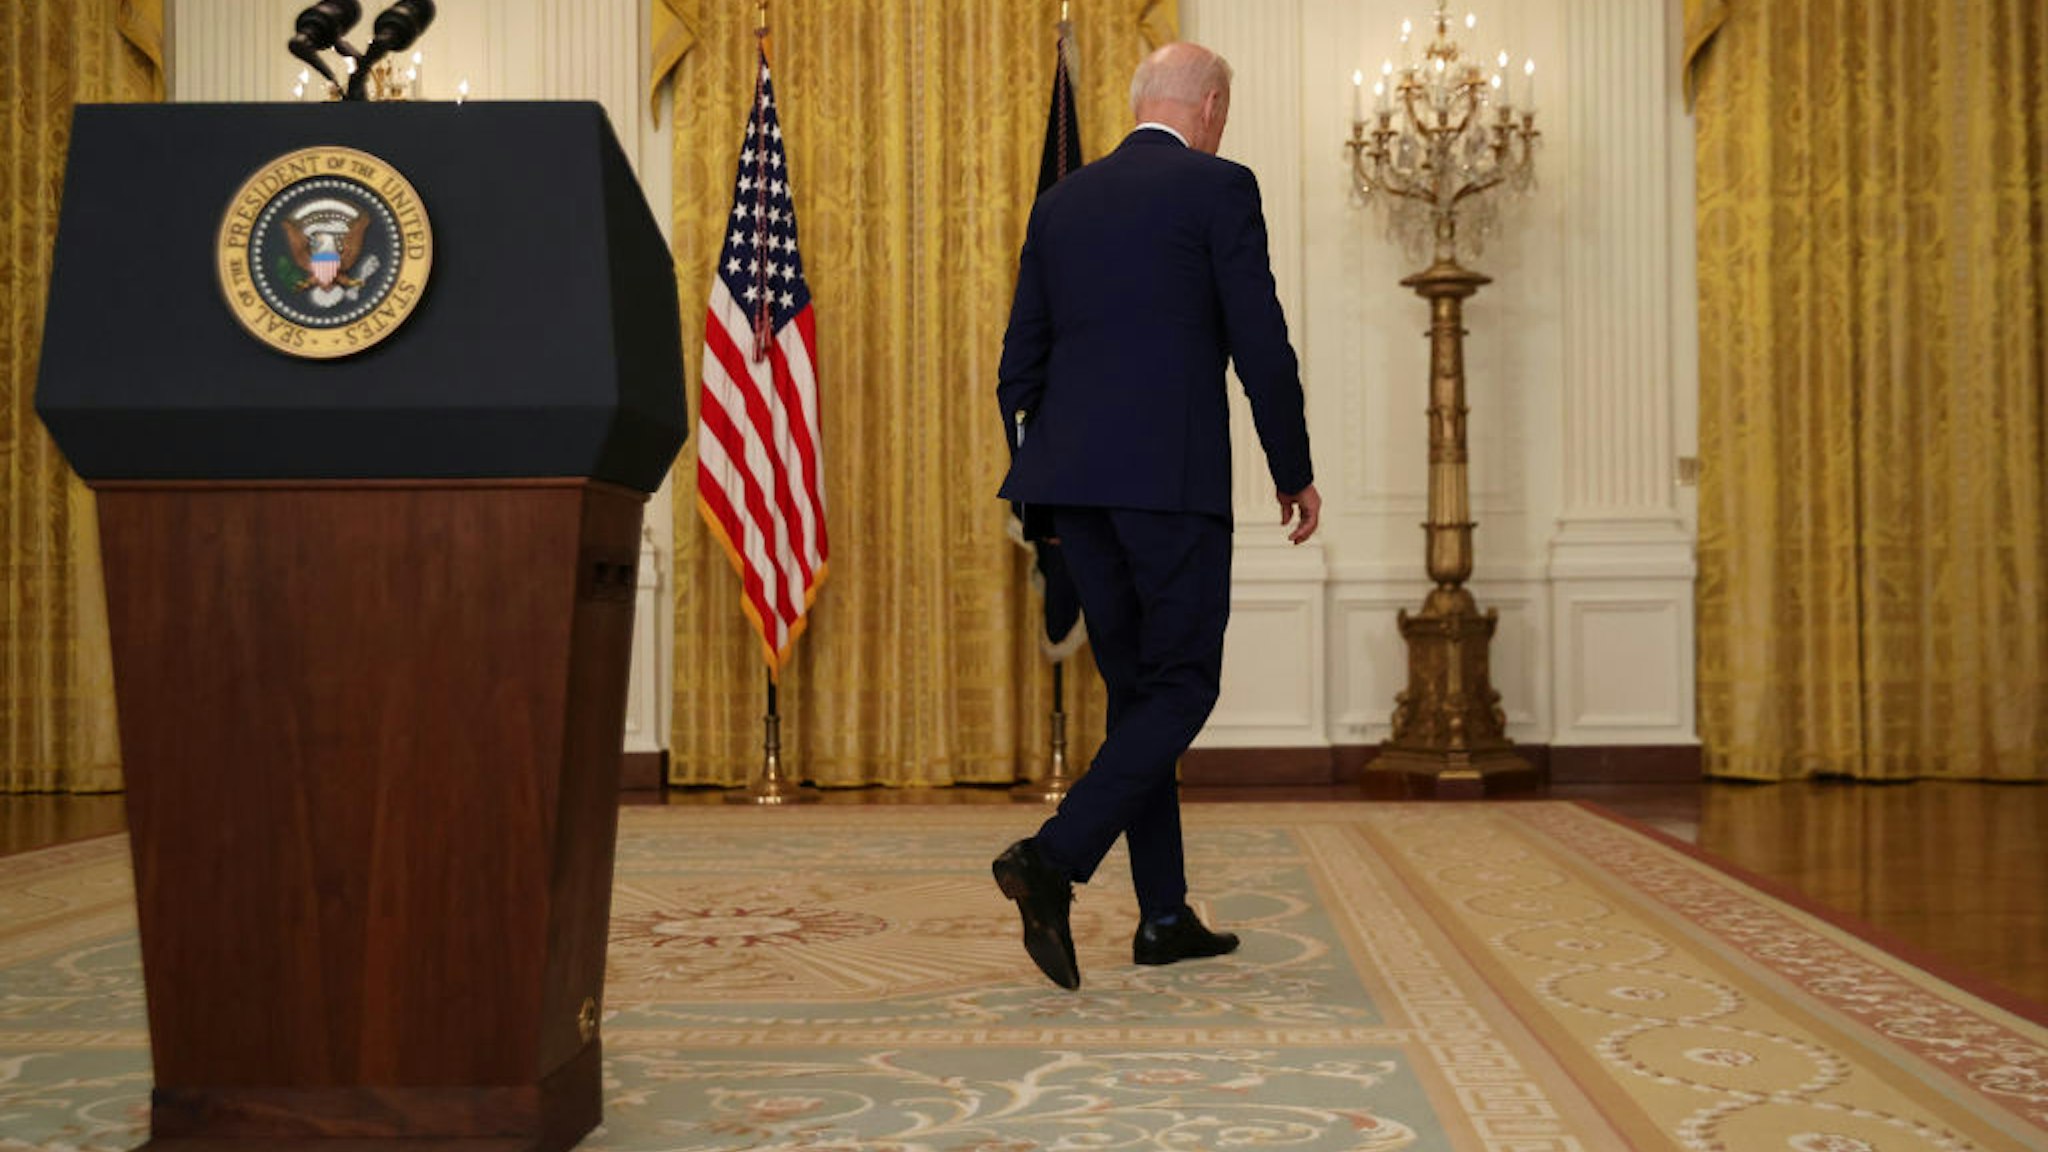 Biden walking away